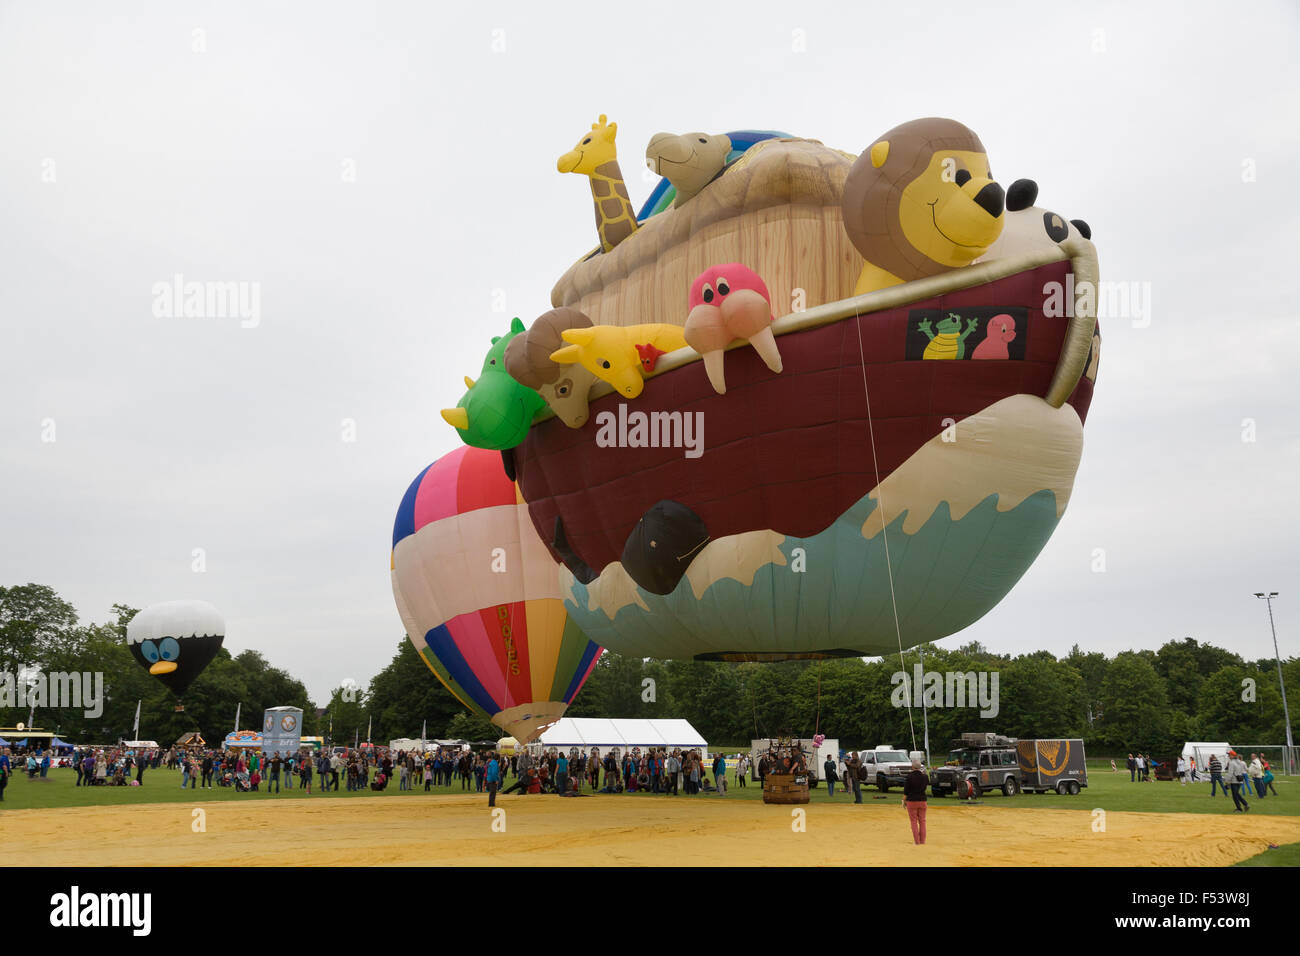 27.06.2015, Kiel, Schleswig-Holstein, Allemagne - première européenne de la  montgolfière -Arche Noah (court : Arky) lors de l'événement -Balloon SAIL  durant la semaine- -Kieler. Indiqués sont les visages des 28 animaux qui